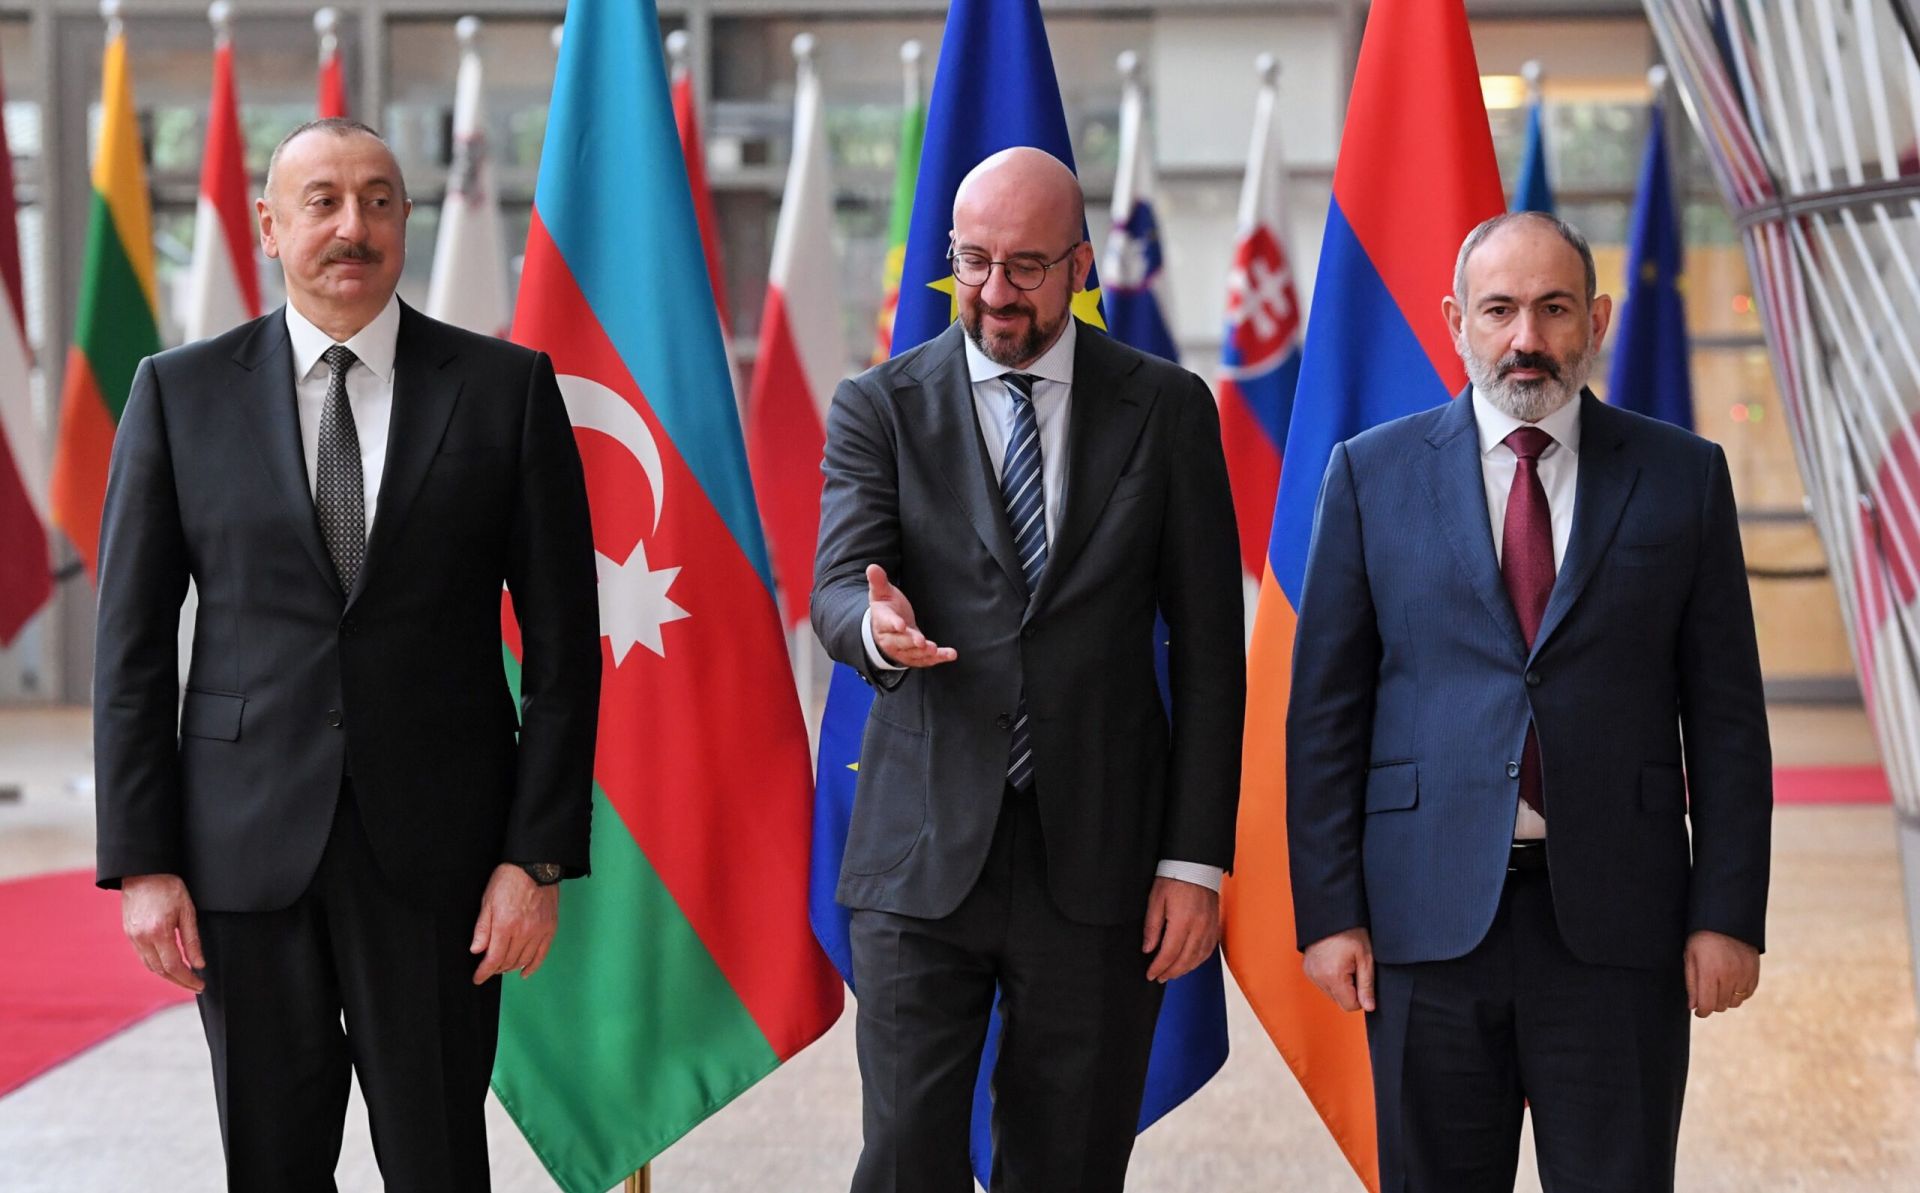 Շառլ Միշելը եռակողմ հանդիպում է ունեցել Հայաստանի վարչապետ Փաշինյանի և Ադրբեջանի նախագահ Ալիևի հետ